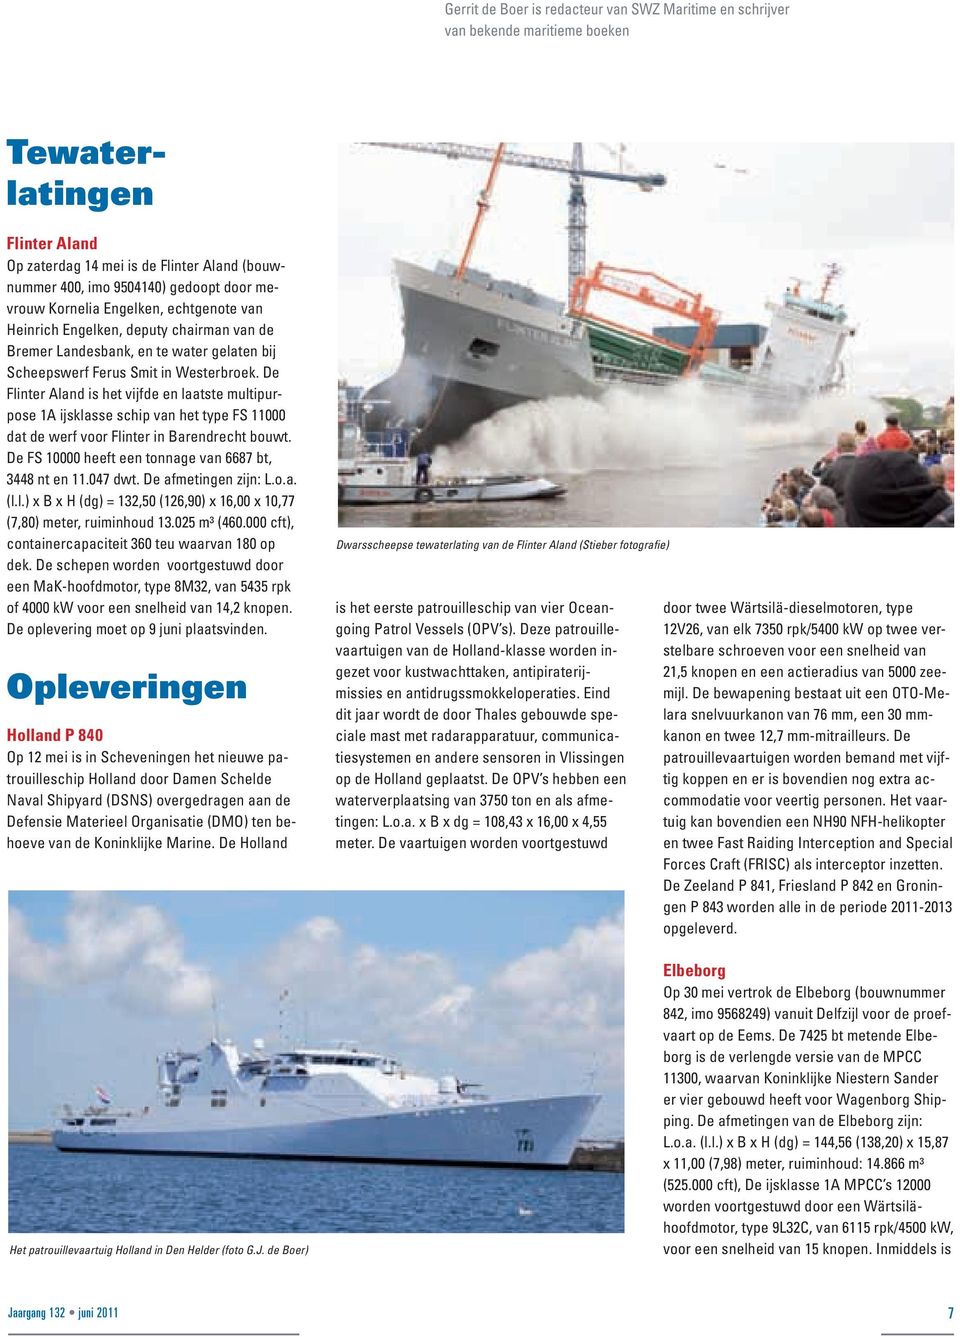 De Flinter Aland is het vijfde en laatste multipurpose 1A ijsklasse schip van het type FS 11000 dat de werf voor Flinter in Barendrecht bouwt. De FS 10000 heeft een tonnage van 6687 bt, 3448 nt en 11.